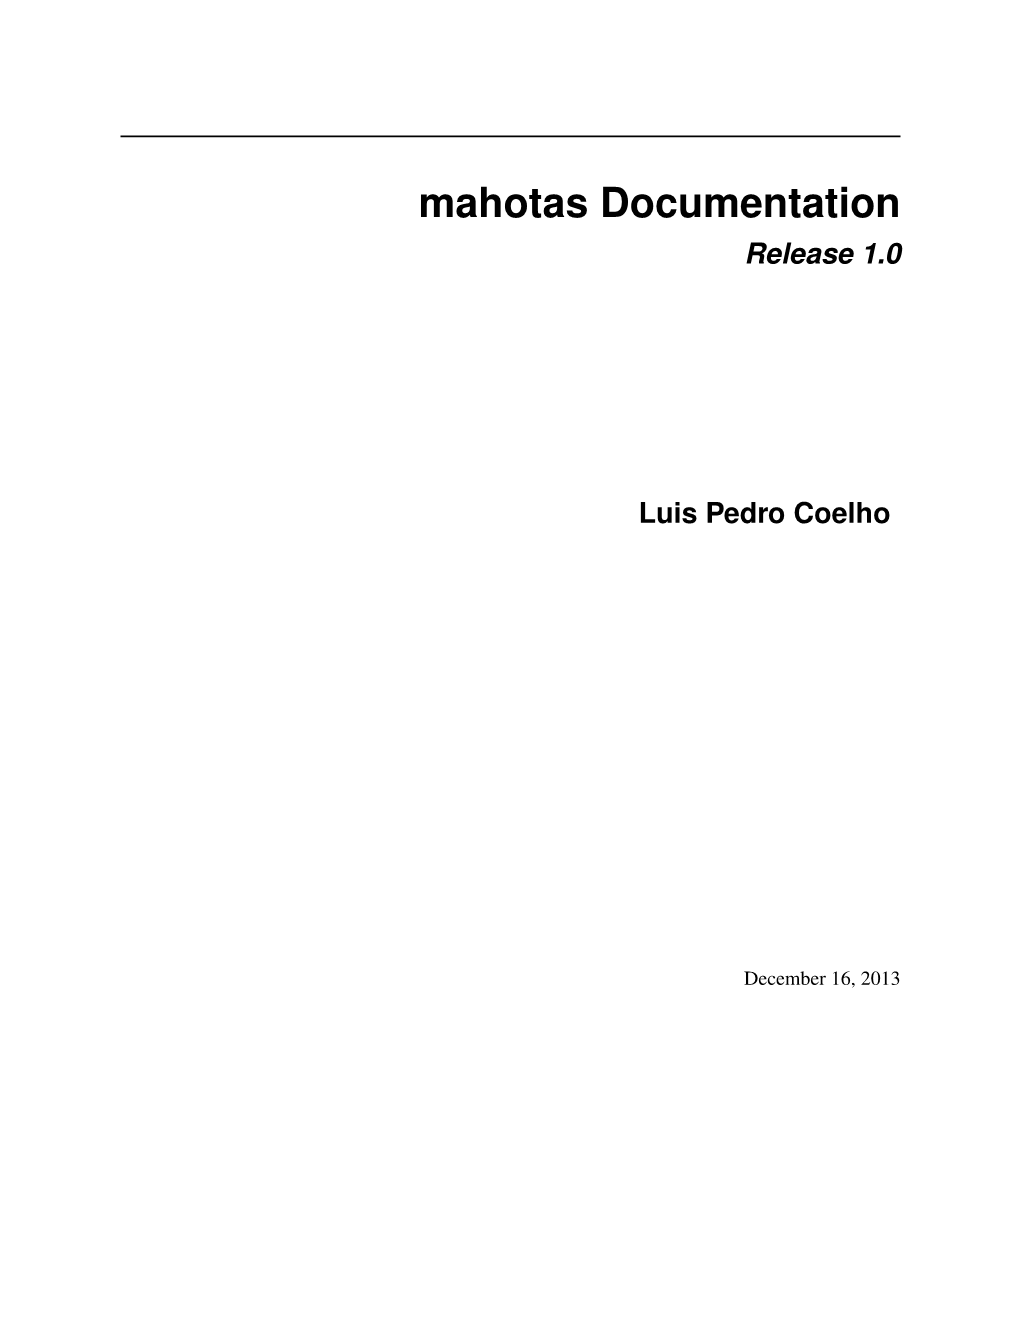 Mahotas Documentation Release 1.0